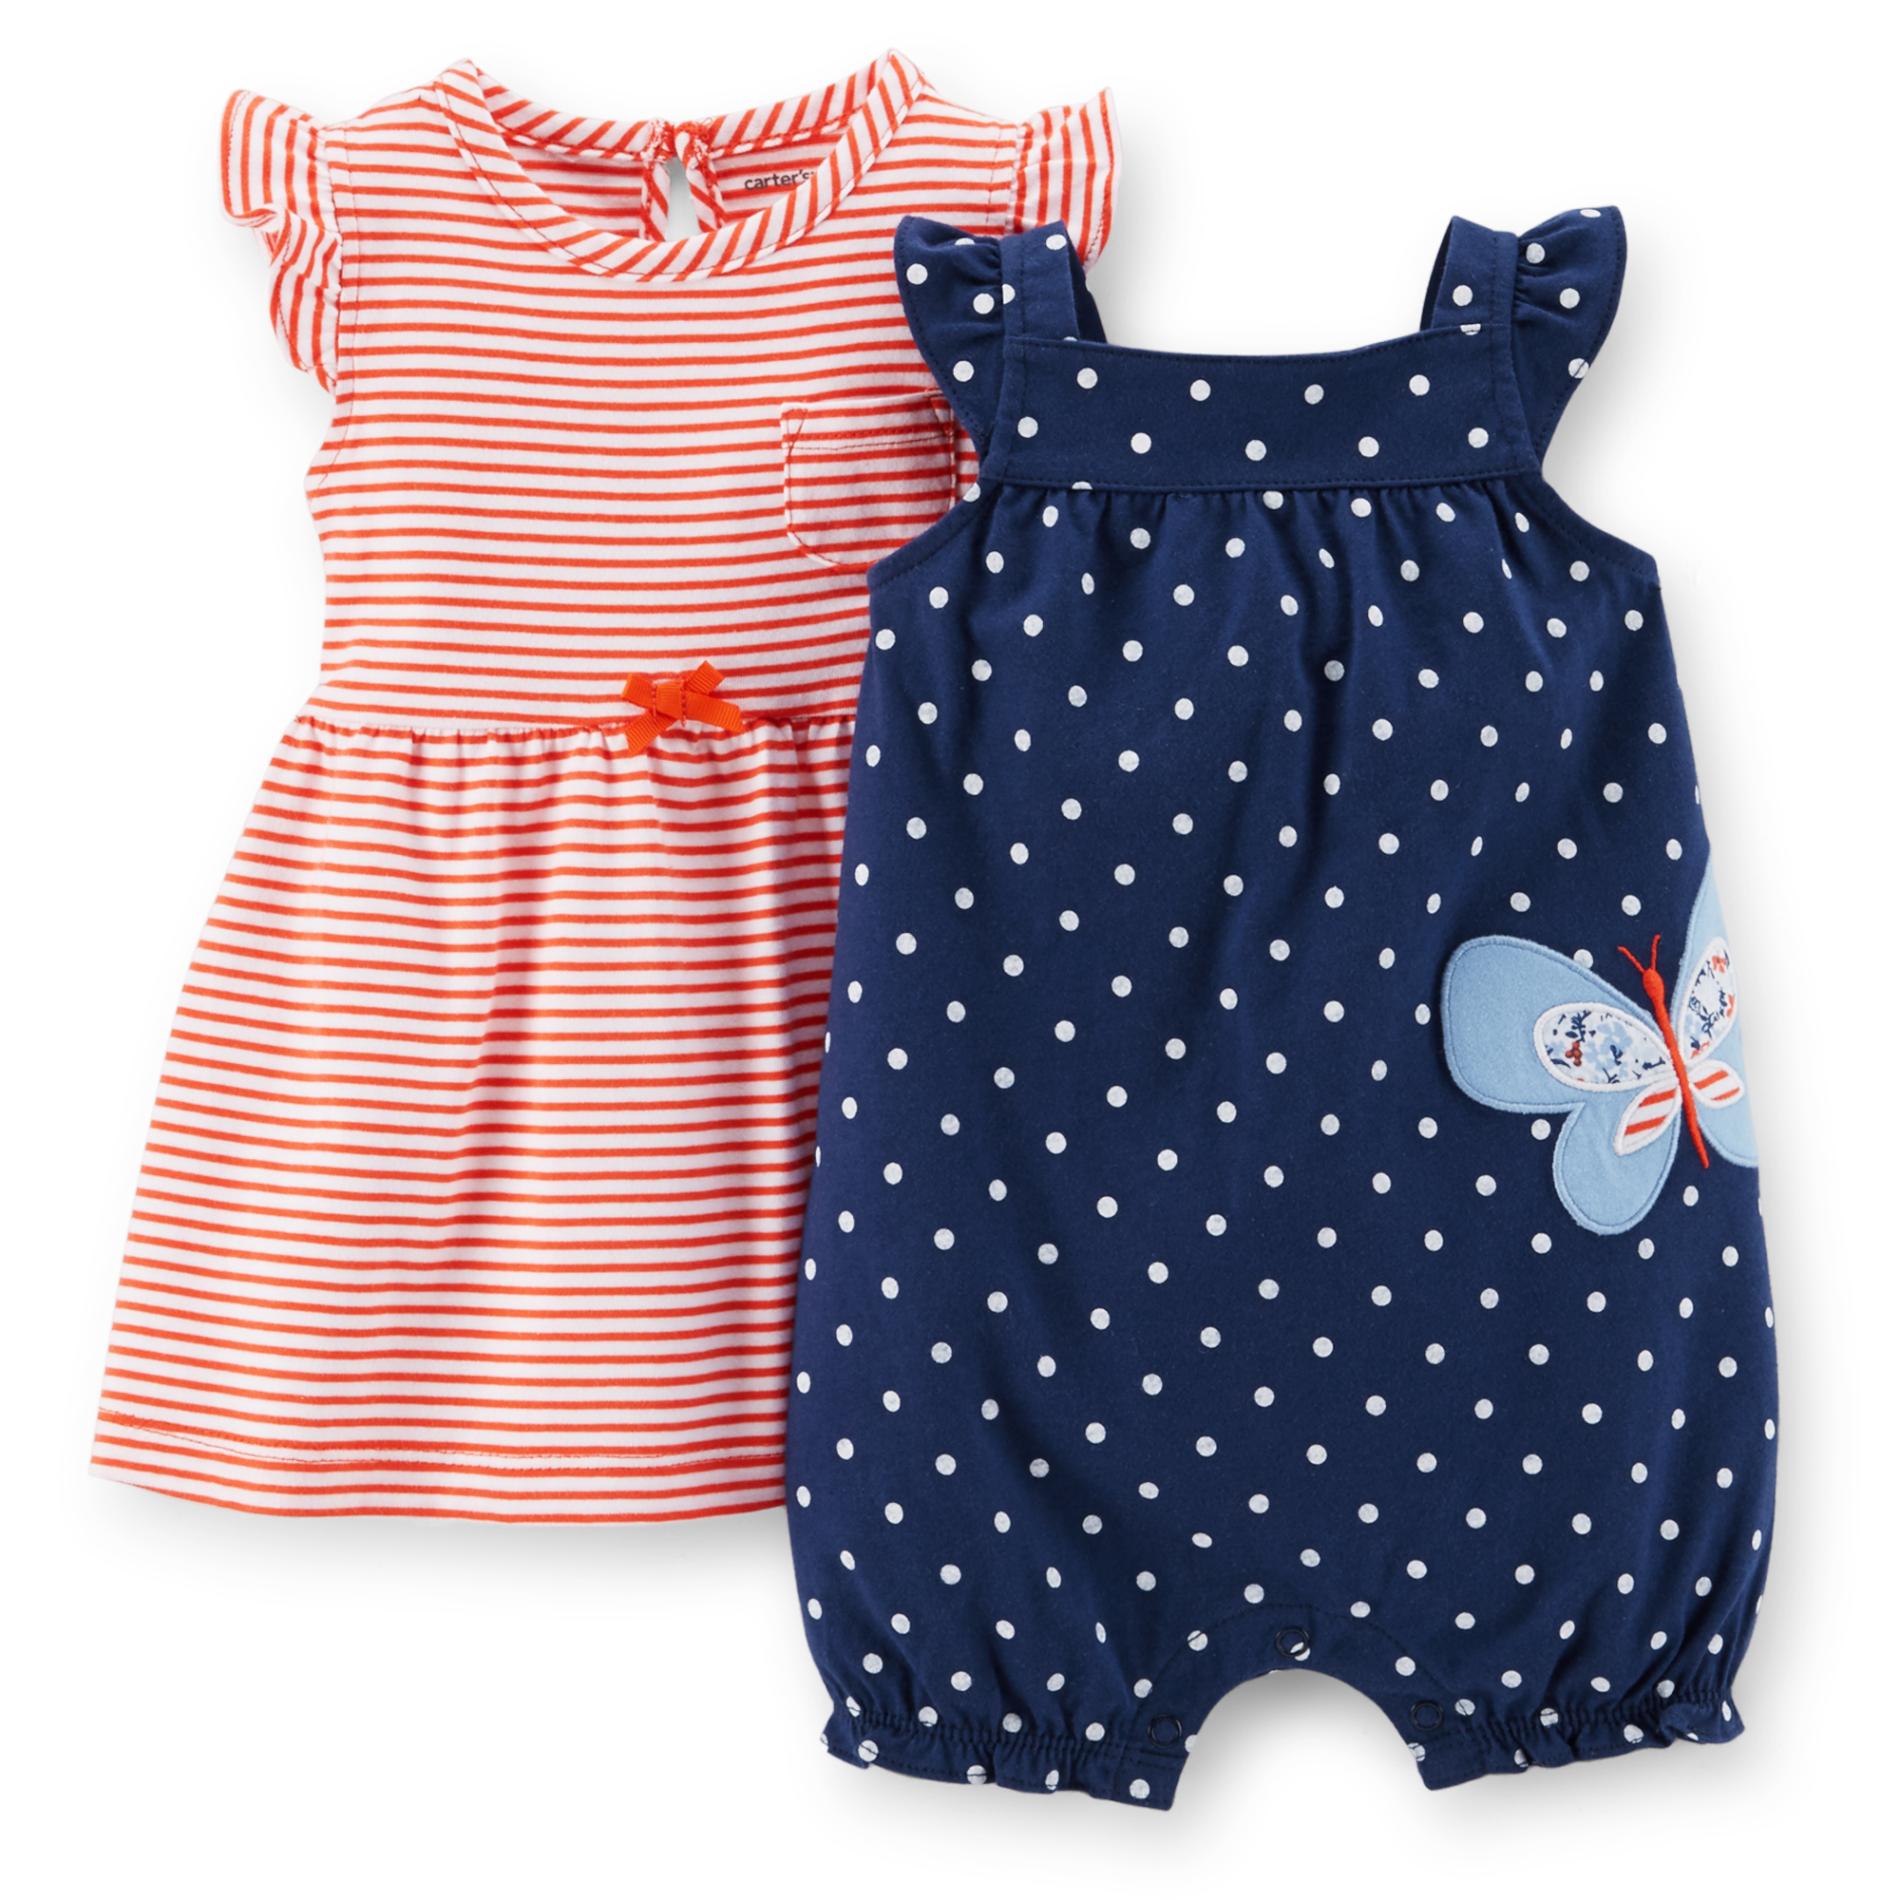 Carter's Newborn & Infant Girl's Dress & Romper - Striped & Polka Dot